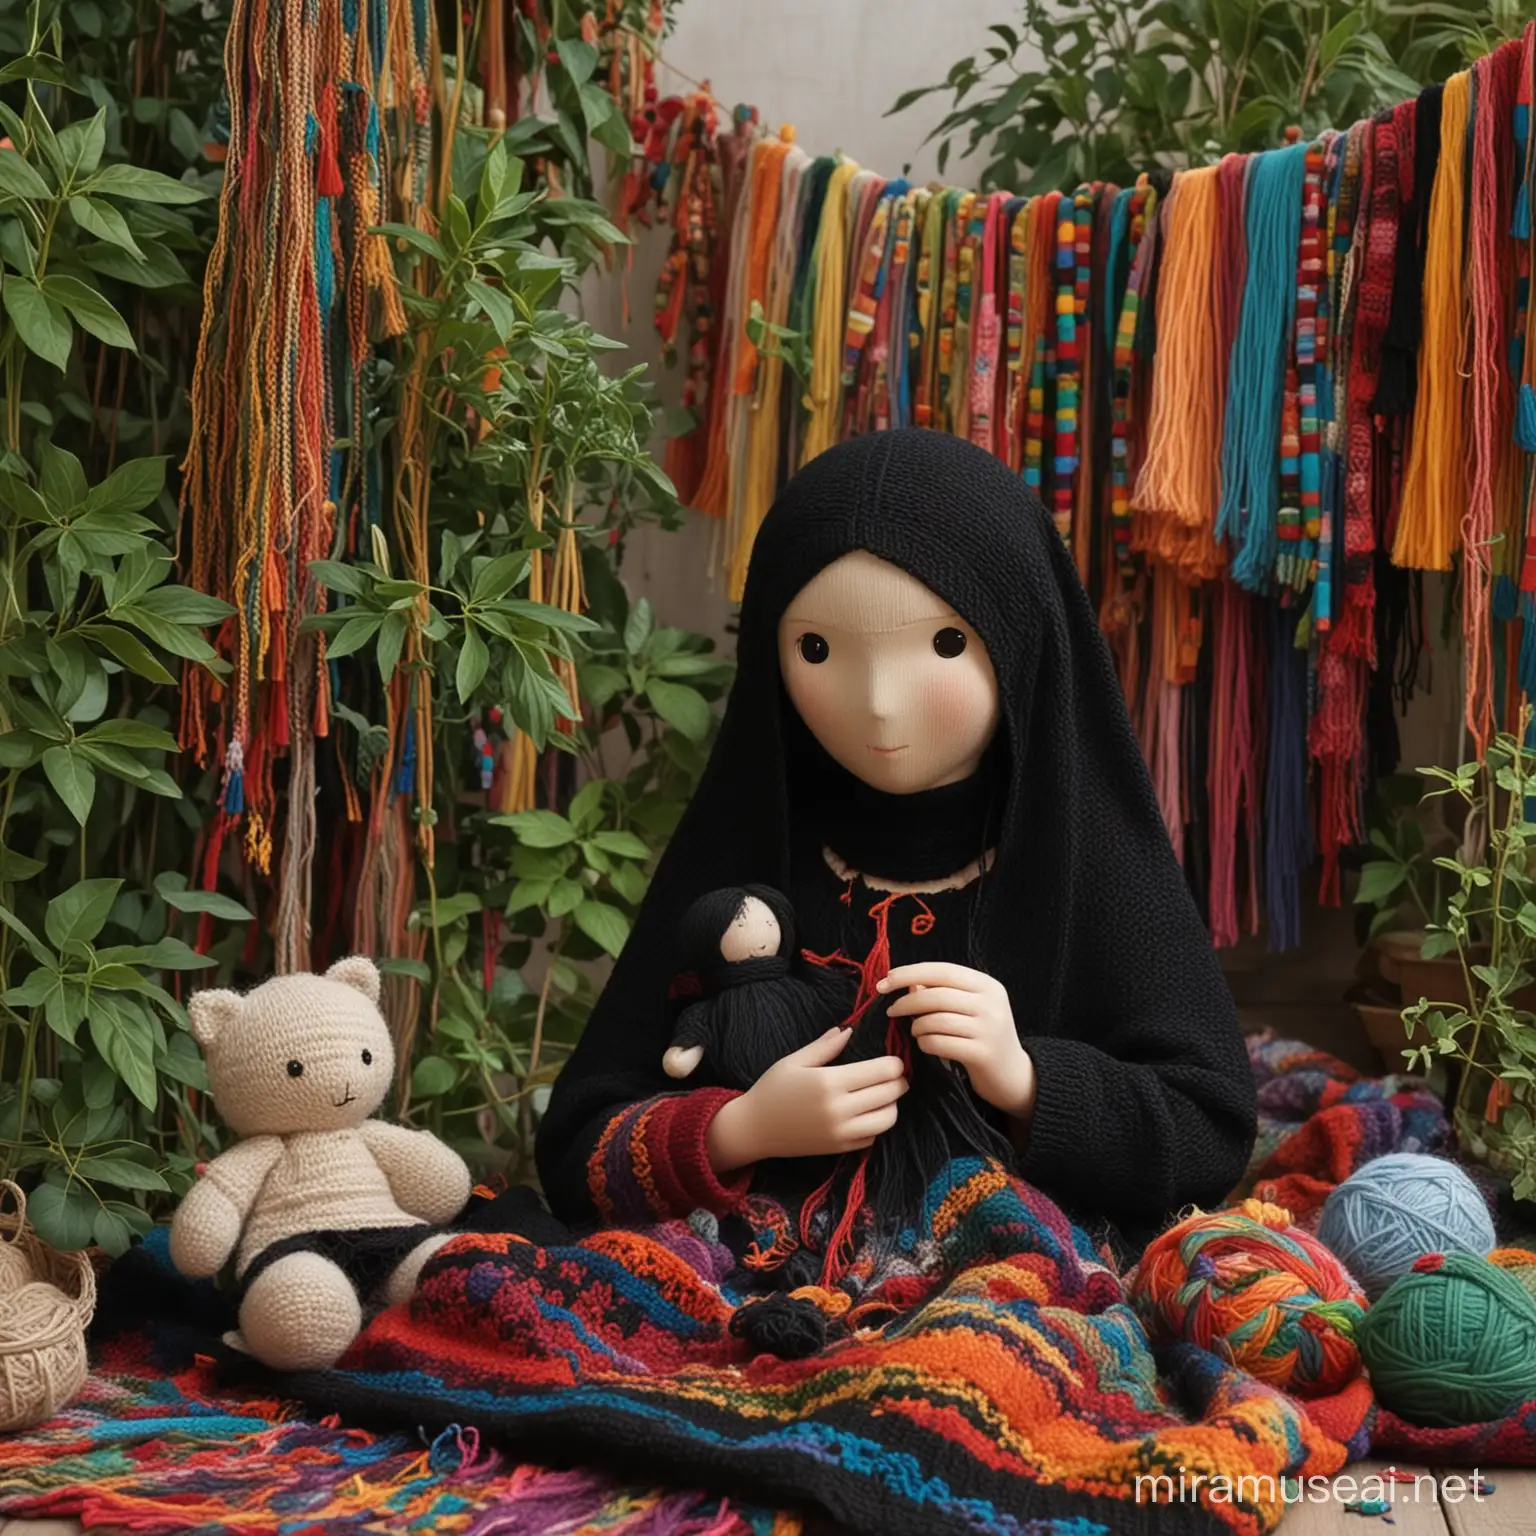 یک دختر چادری با چادر مشکی با چهره نیم رخ که بین کاموا های رنگی و عروسک های بافتنی نشسته است و درحال بافتنی هست و در دستش کاموا و قلاب هست و محیط سرسبز هست 